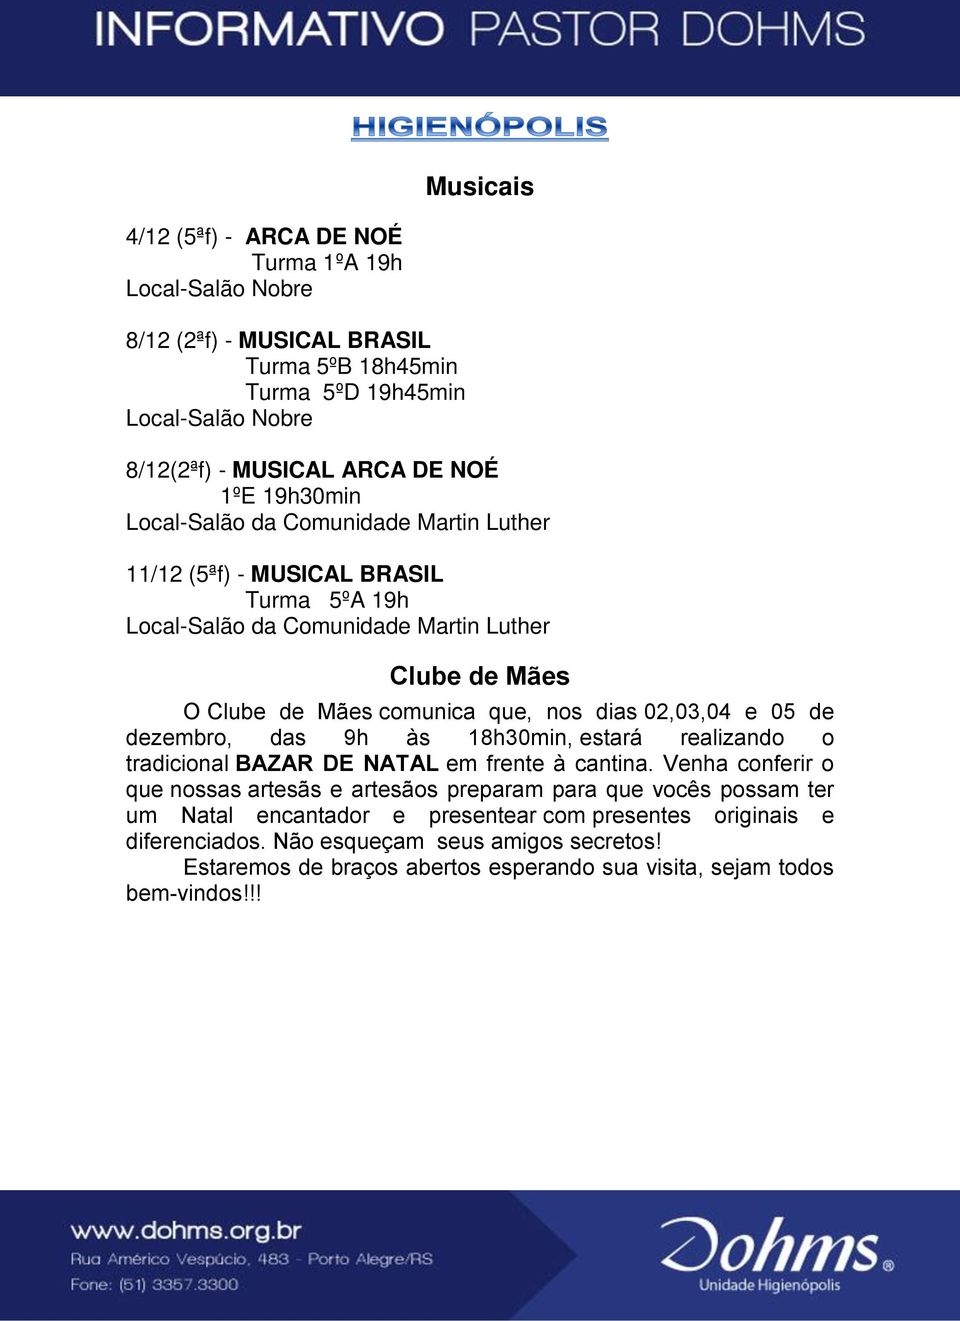 02,03,04 e 05 de dezembro, das 9h às 18h30min, estará realizando o tradicional BAZAR DE NATAL em frente à cantina.